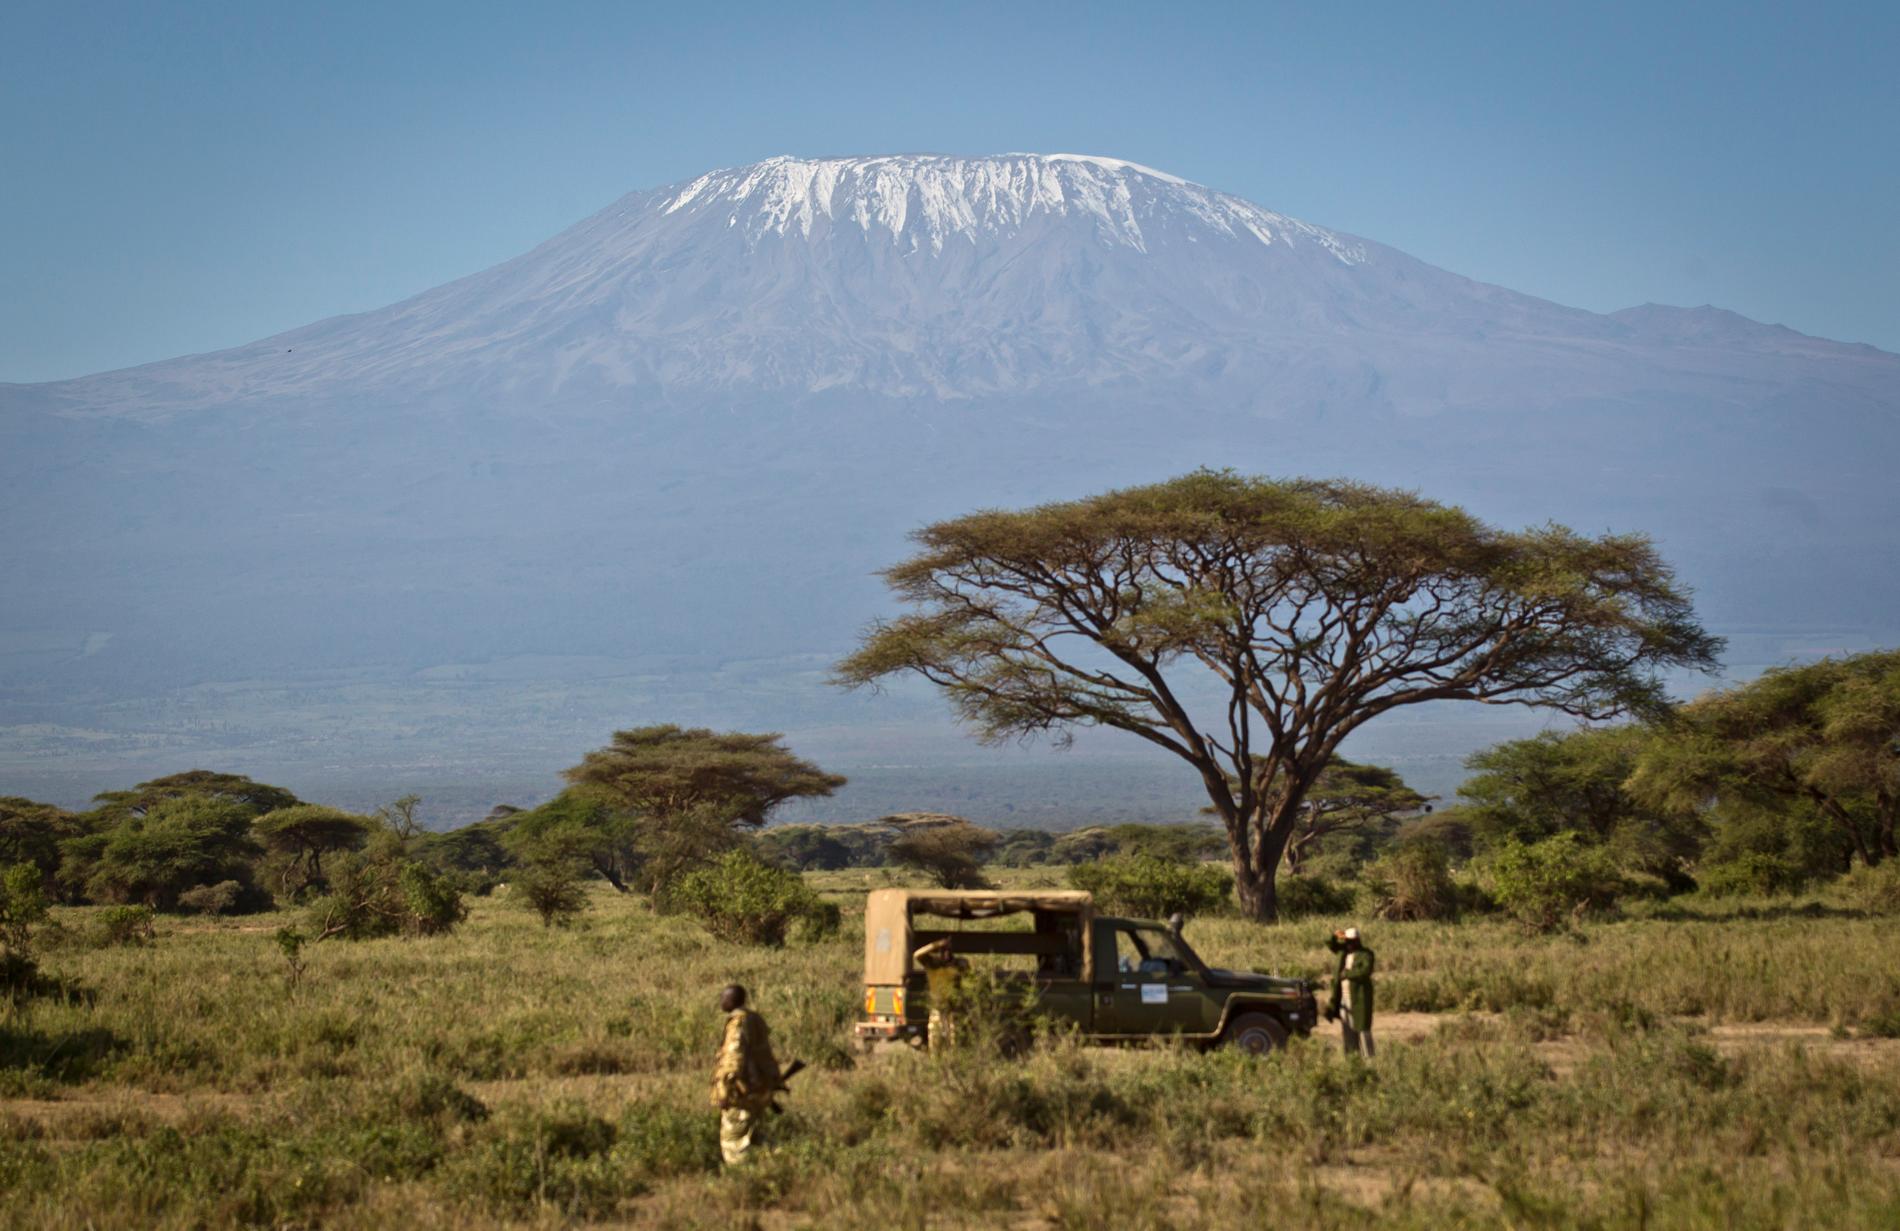 Den nyupptäckta vulkanen har samma form som Kilimanjaros vulkaner. Arkivbild.